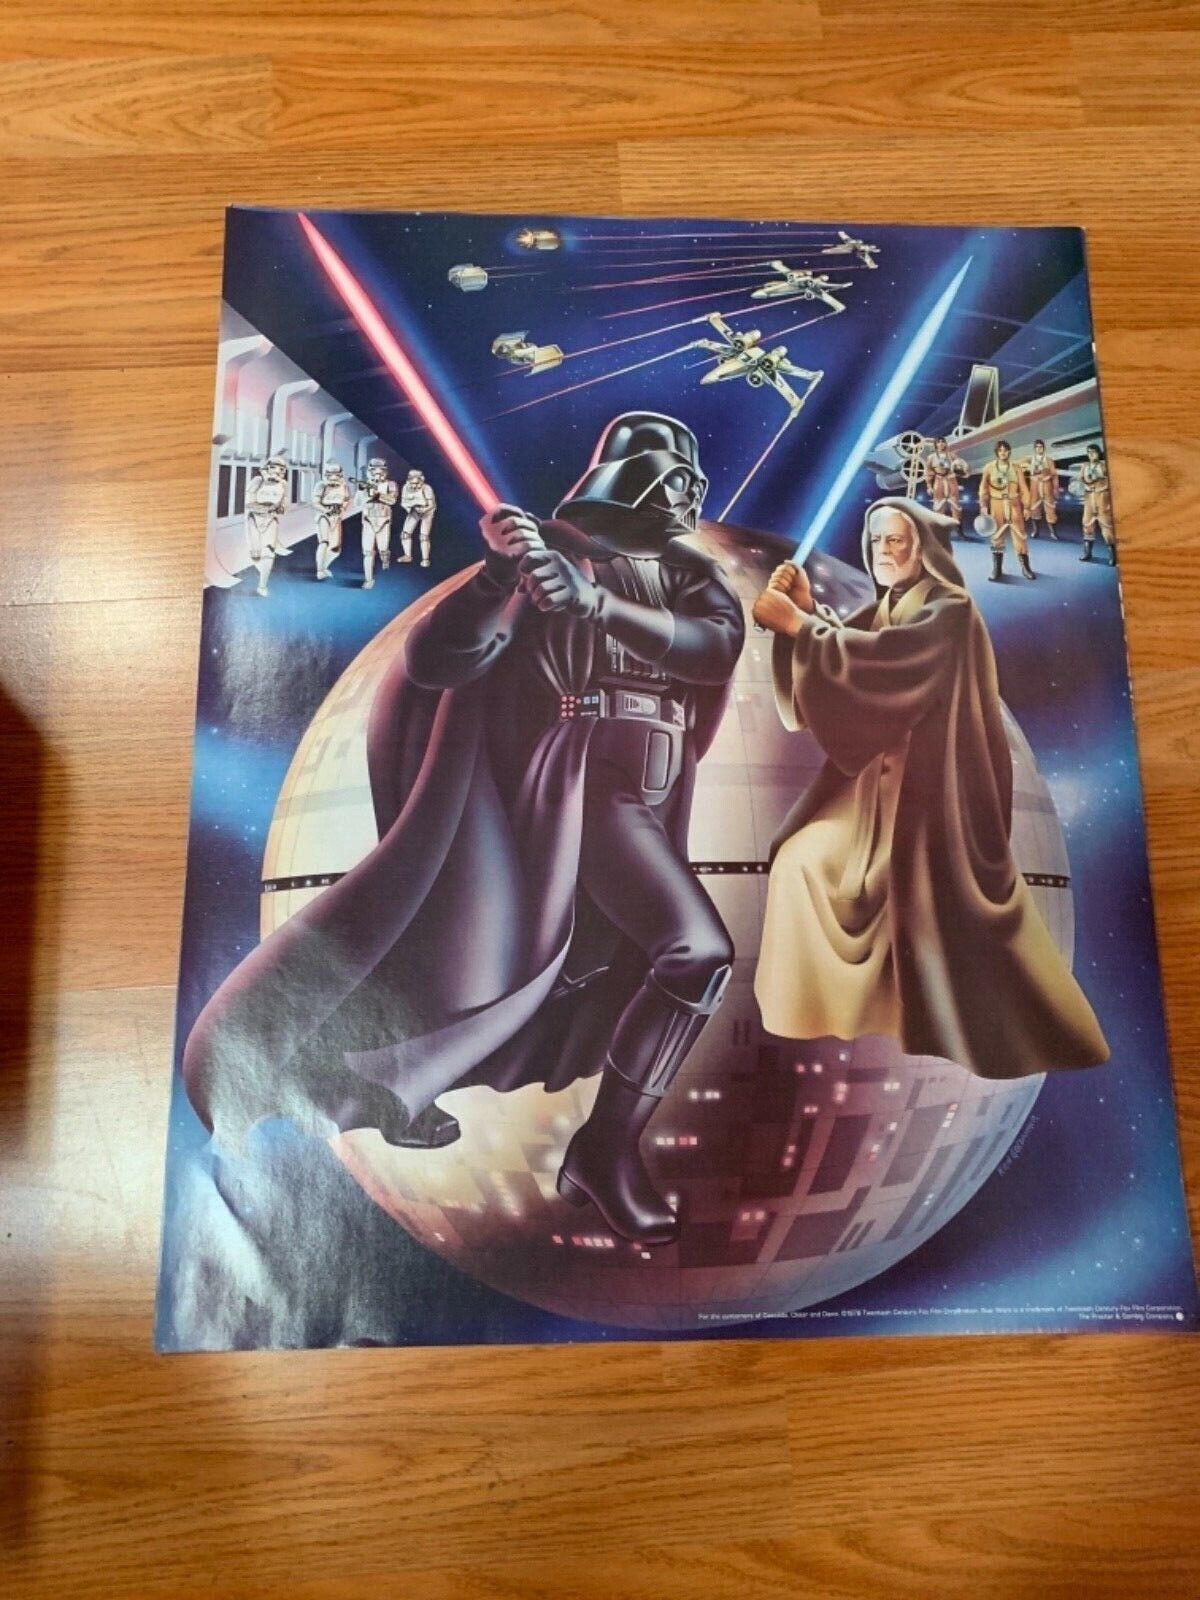 Star Wars Original Proctor & Gamble Poster 1978 Set of 3 Original Posters